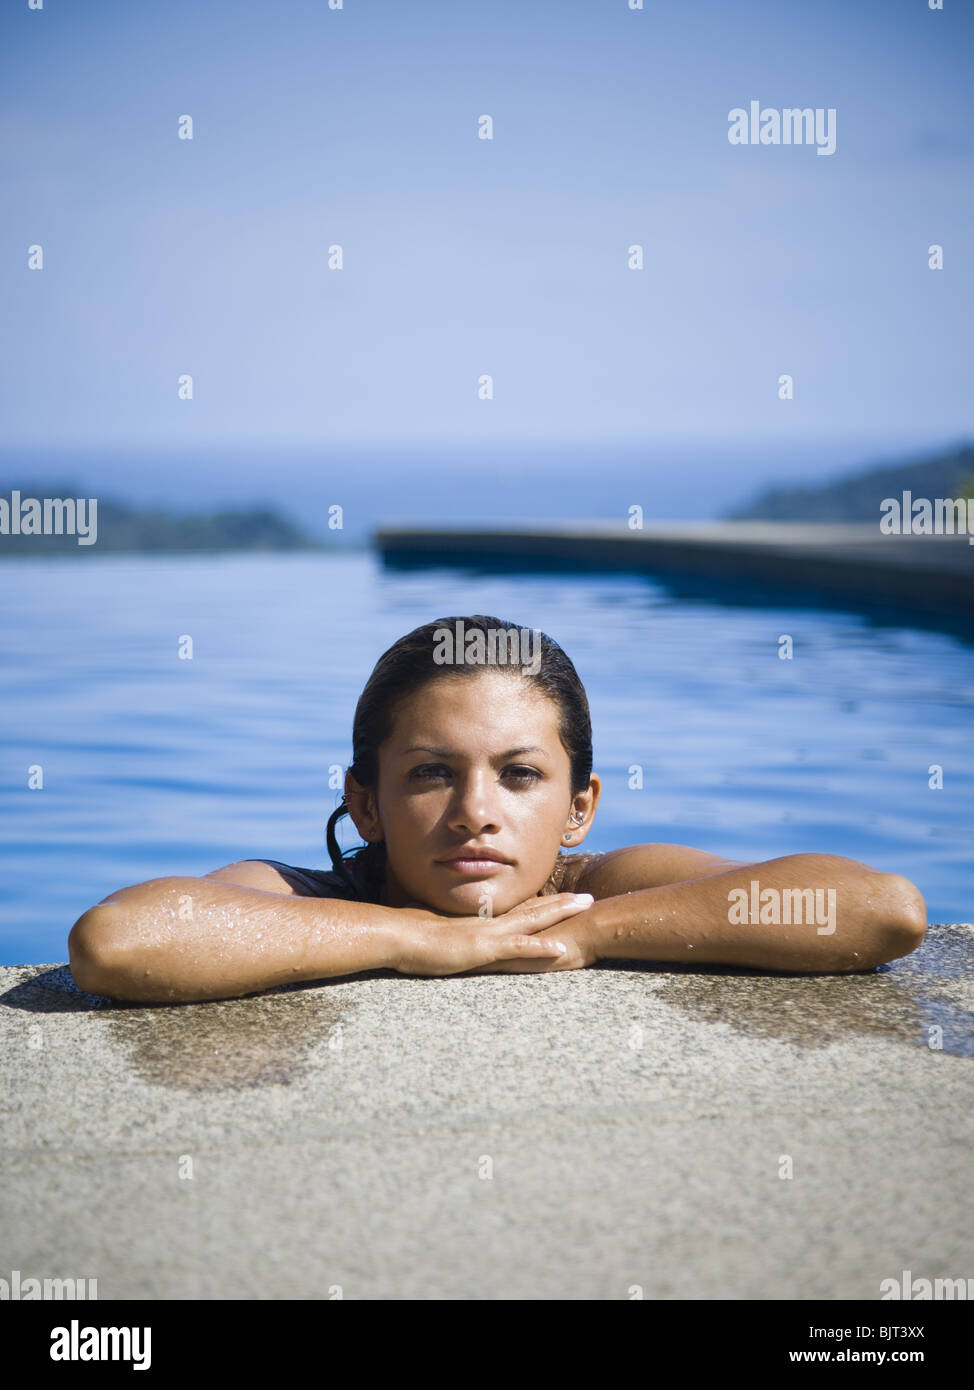 Woman on ledge de piscine Banque D'Images